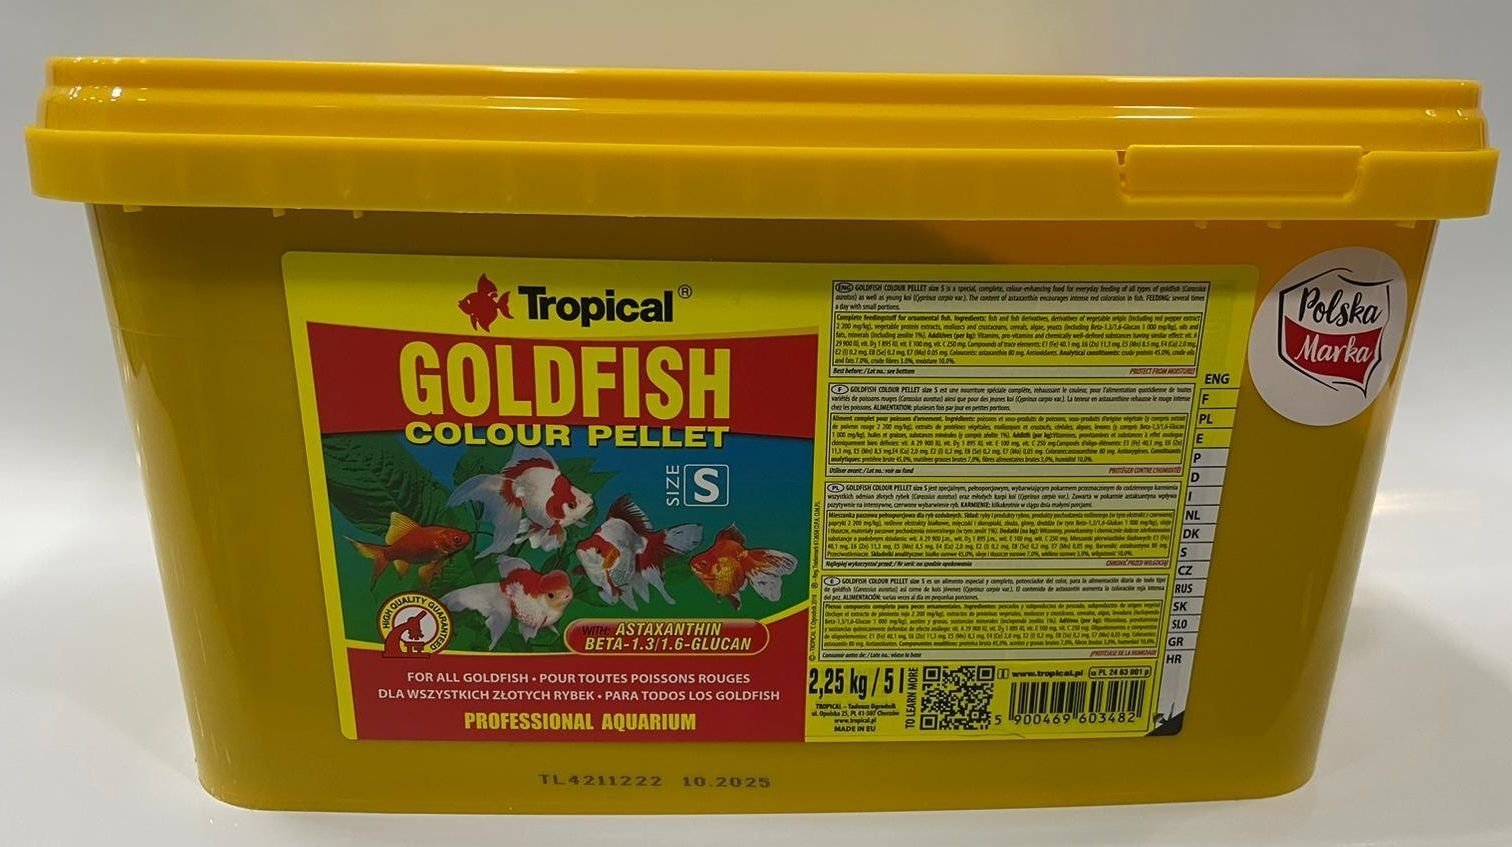 TROPICAL Goldfish Colour Pellet Size S 5 L / 1.8 KG